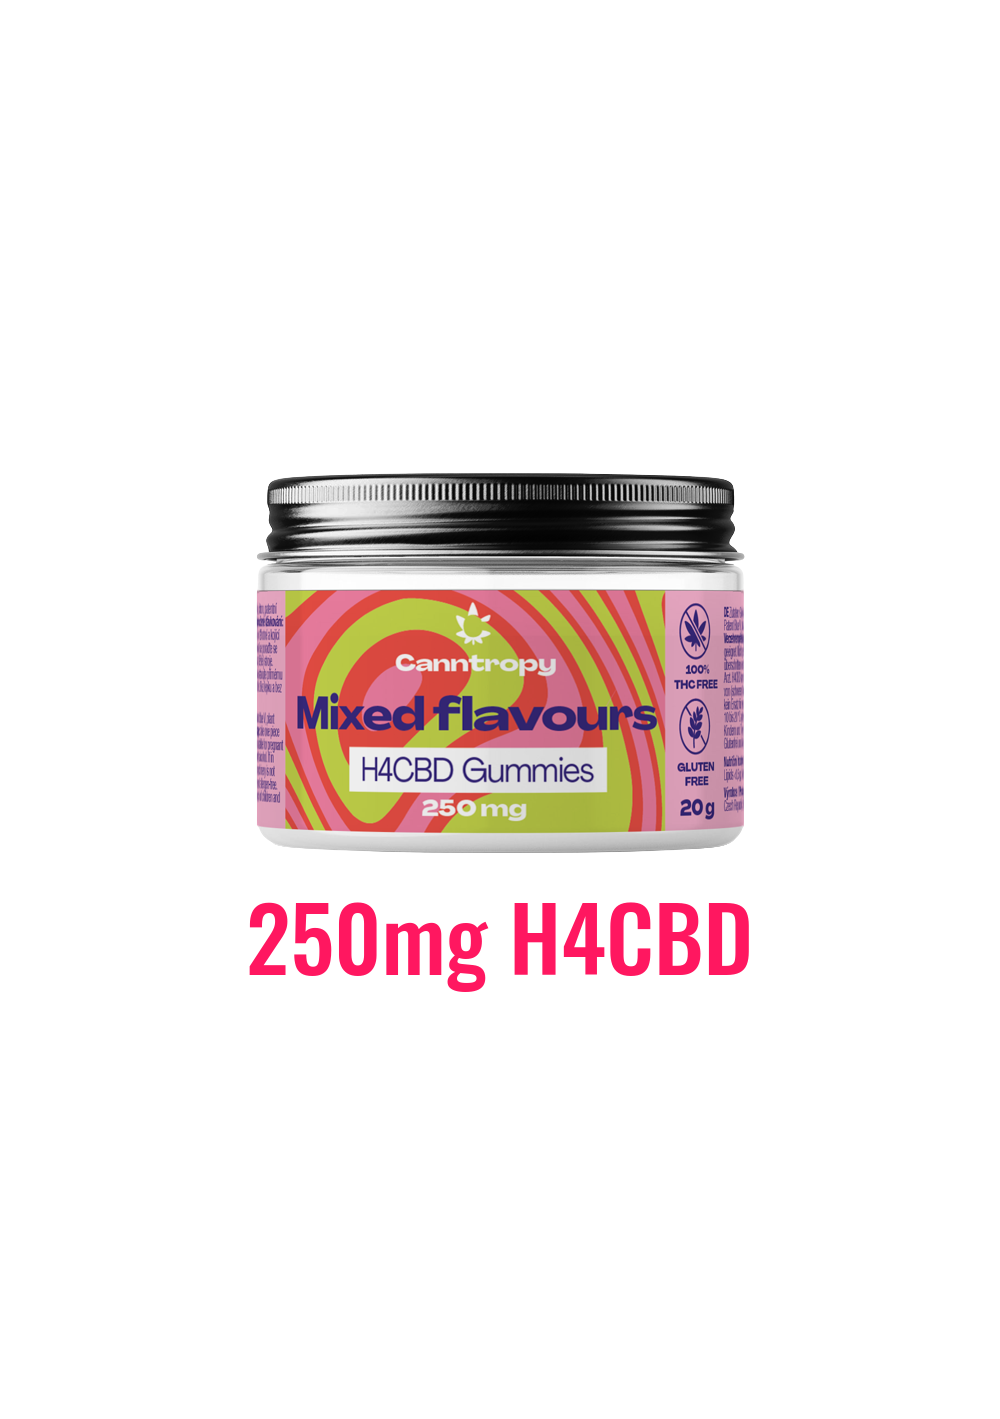 H4CBD Fruit Gummies Flavour Mix, 10 pcs - Canntropy